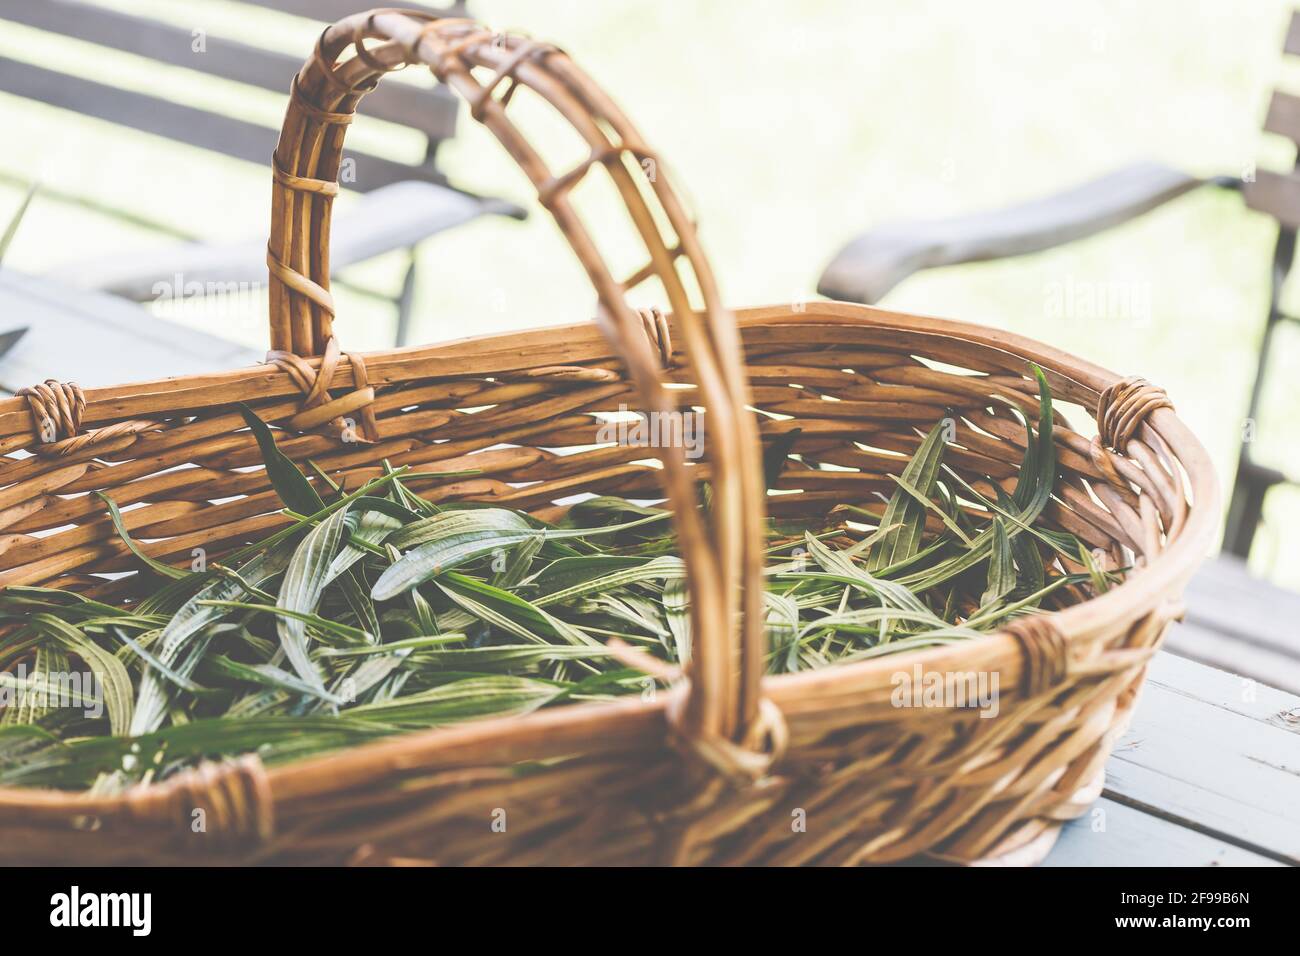 Ribwort plantain - un'erba medicinale che mitiga l'irritazione, può essere usato, per esempio, come un tè in naturopatia (Plantago lanceolata), kernelwort, foglia polmonare, lingua serpente Foto Stock